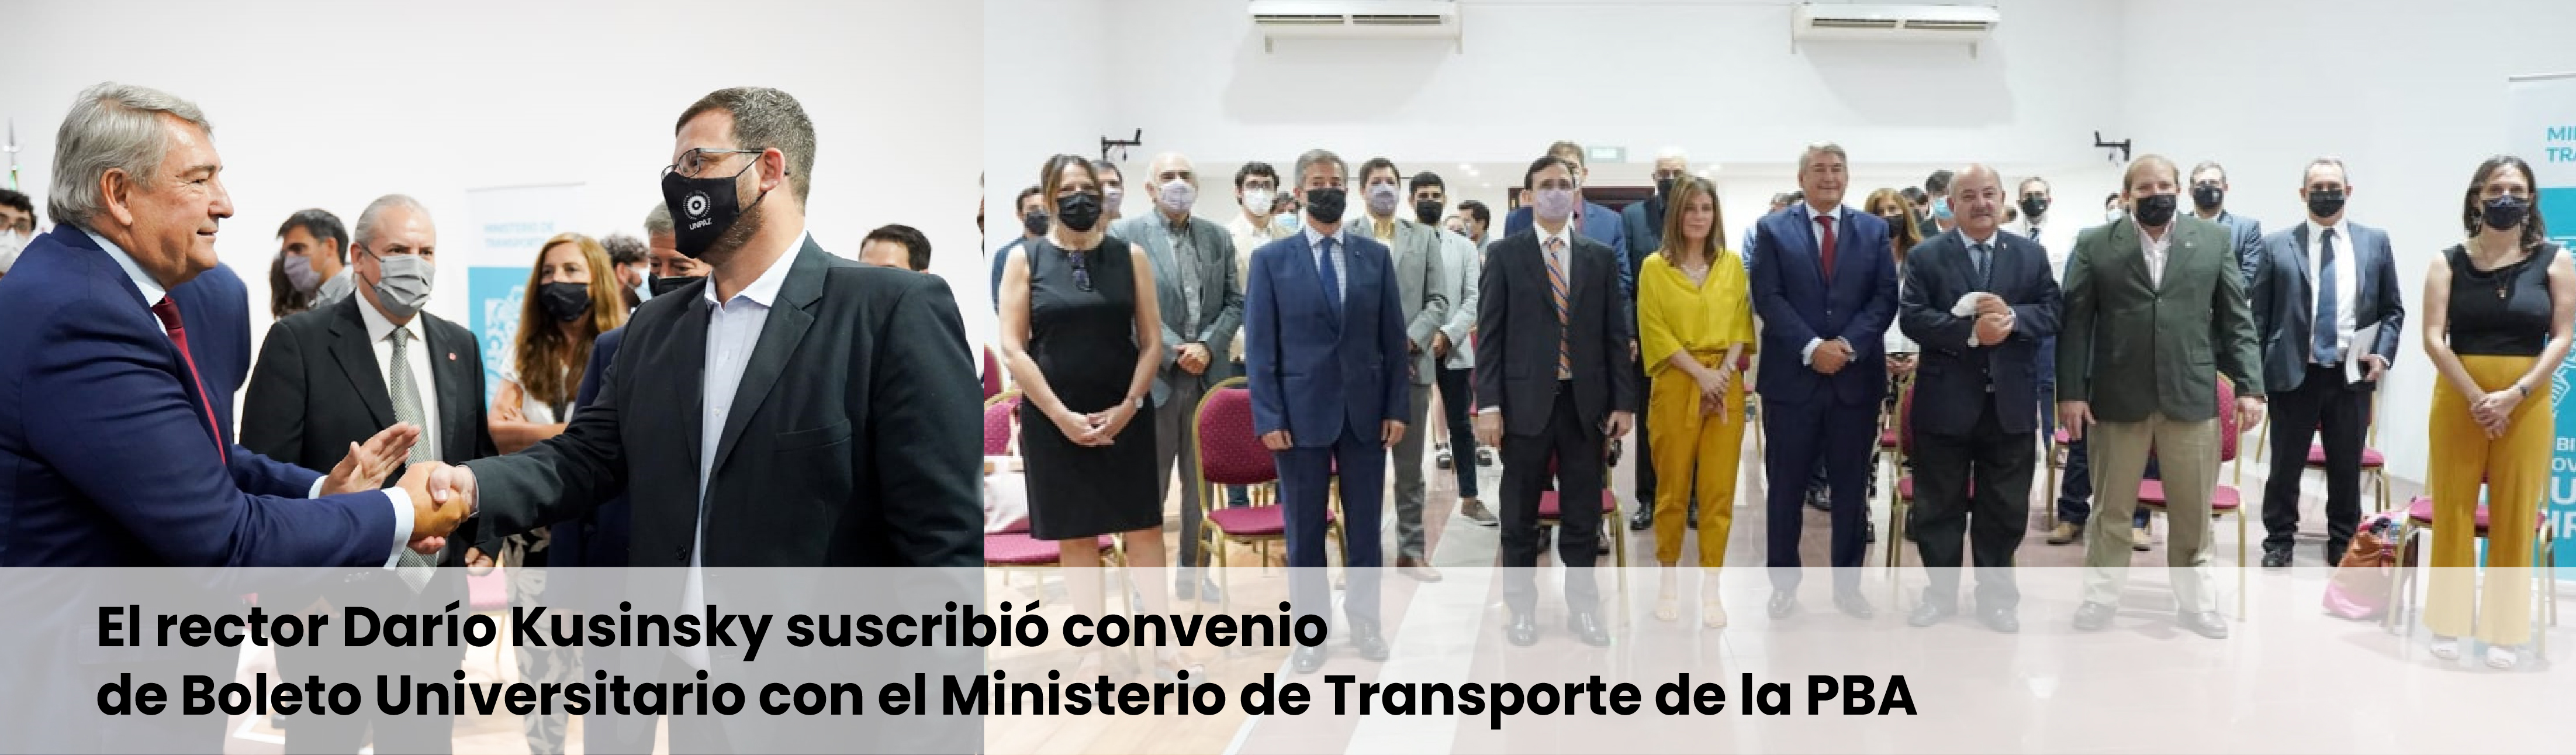 El rector Darío Kusinsky suscribió convenio de Boleto Universitario con el Ministerio de Transporte de la PBA